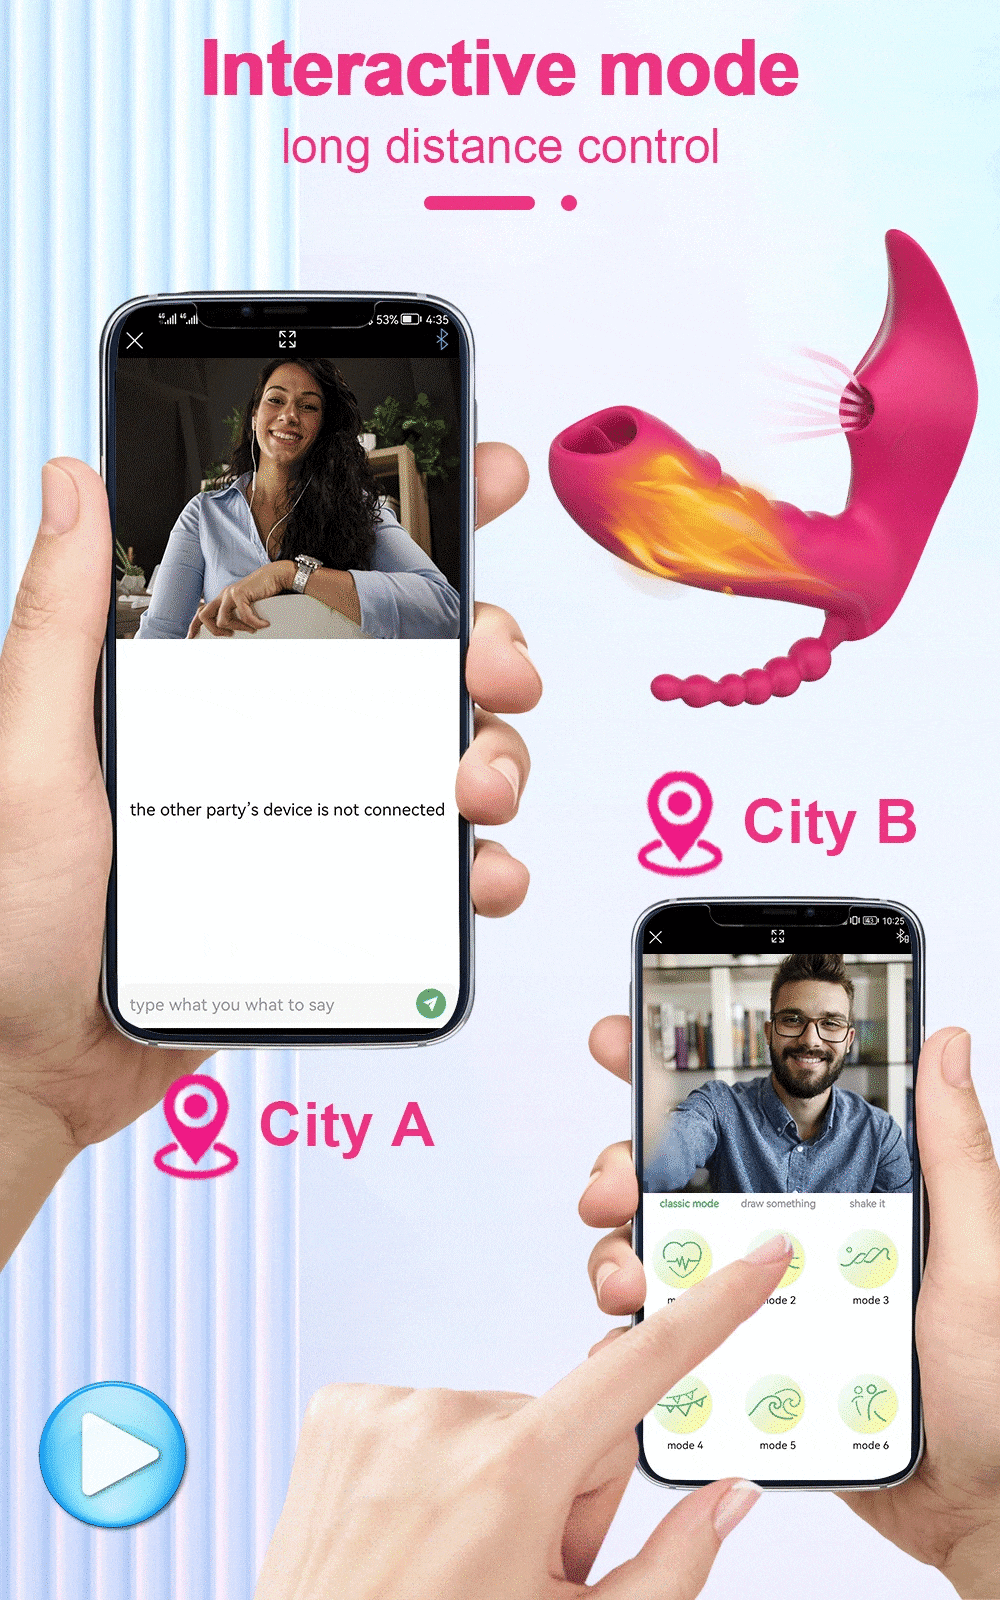 Kho sỉ Dương vật giả 3 trong 1 Love Spouse rung liếm hút kết nối Bluetooth điều khiển qua app hàng xách tay